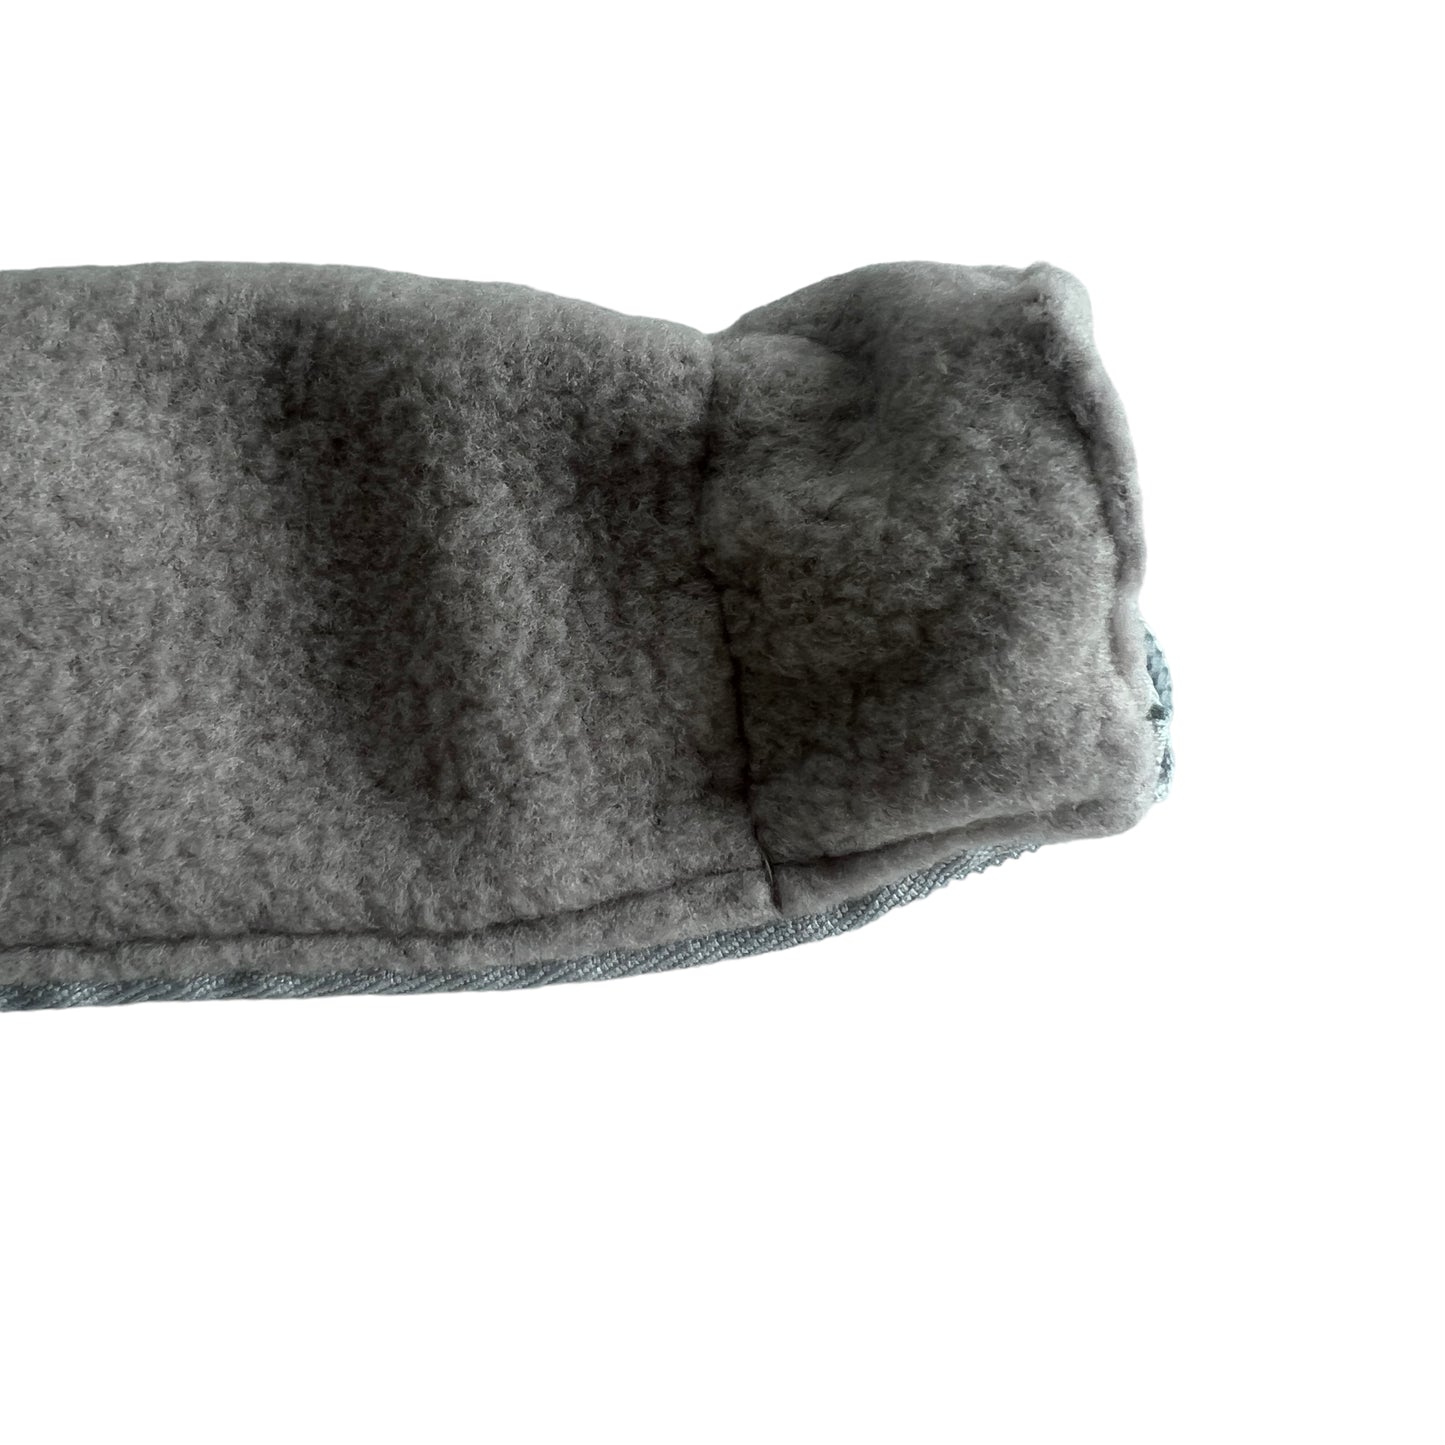 CPAP / BIPAP Hose Cover - Fleece